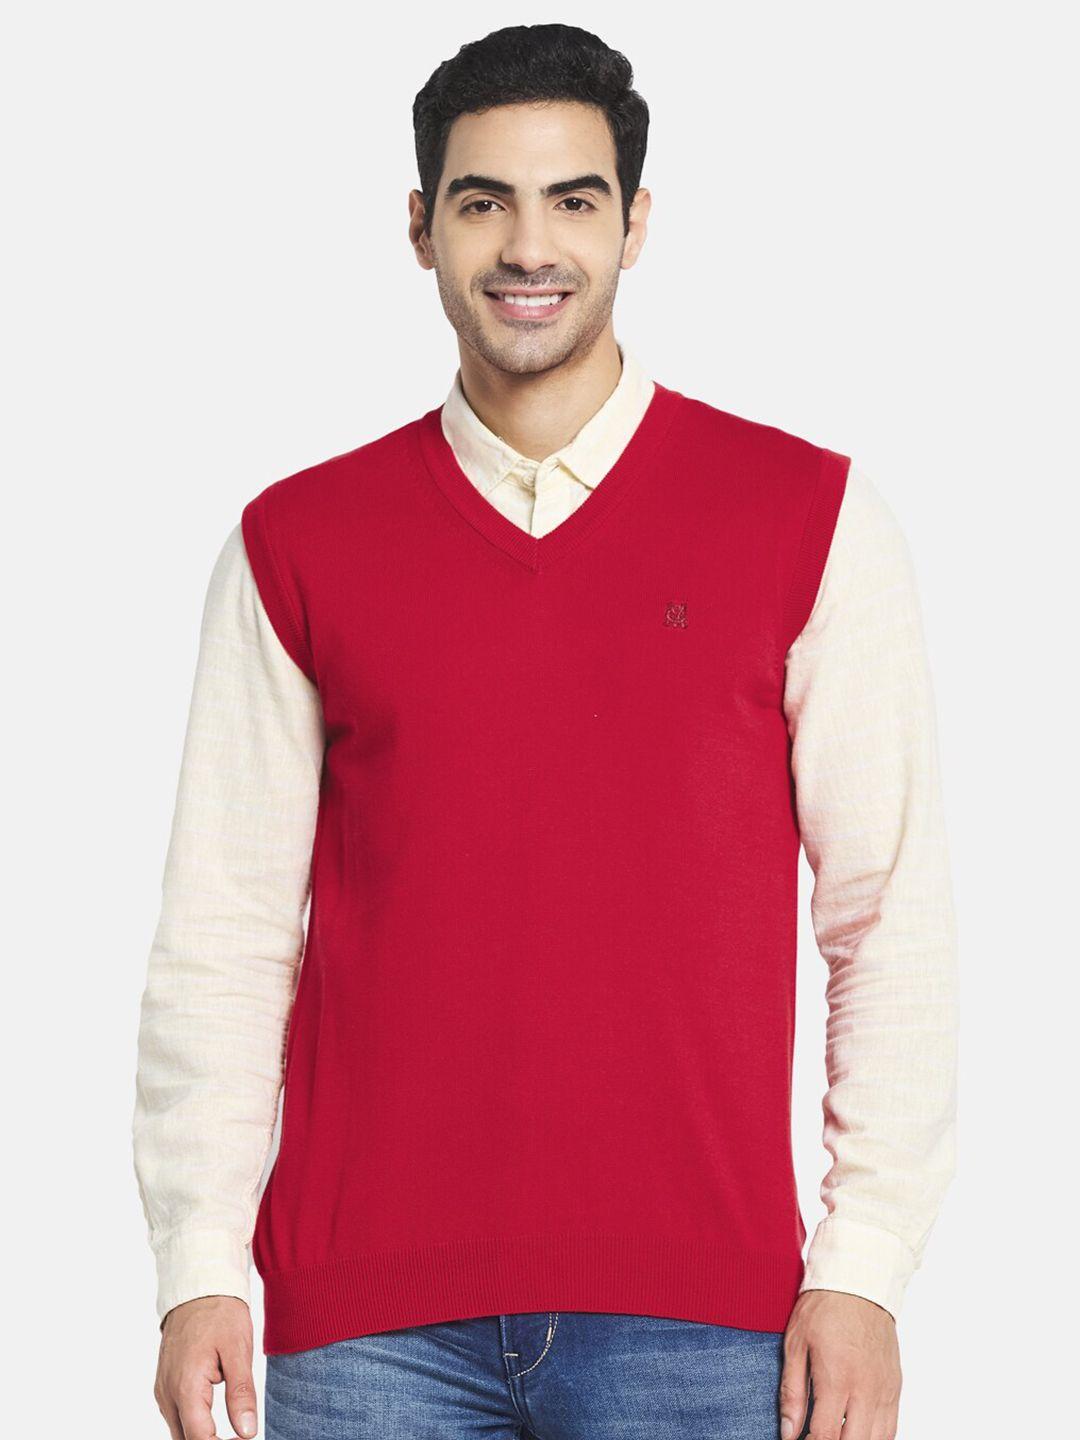 monte carlo men red sweater vest